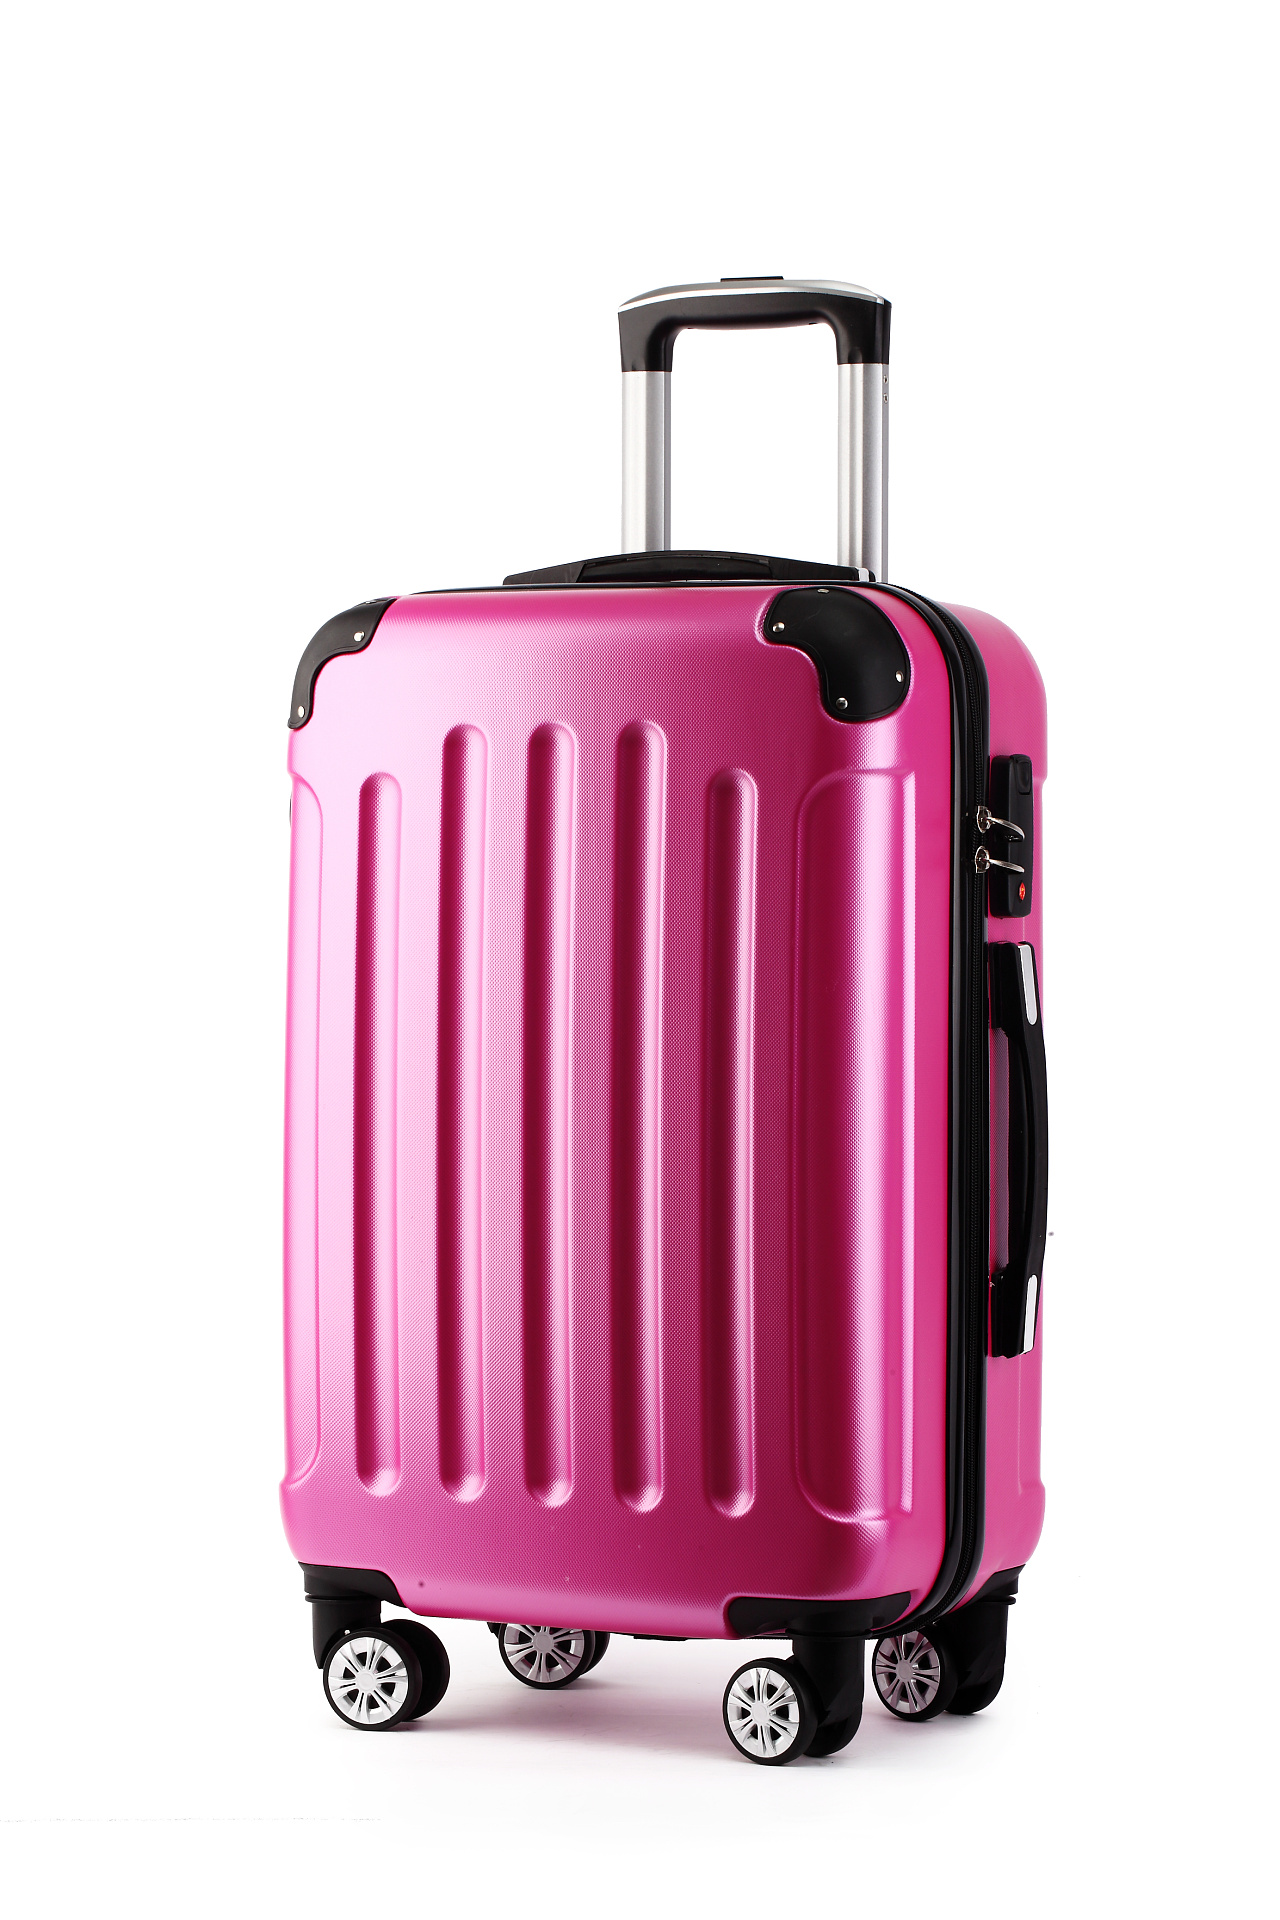 大容量旅行箱加厚运动版32寸pc拉杆箱批发网红 糖果色行李箱托运-阿里巴巴